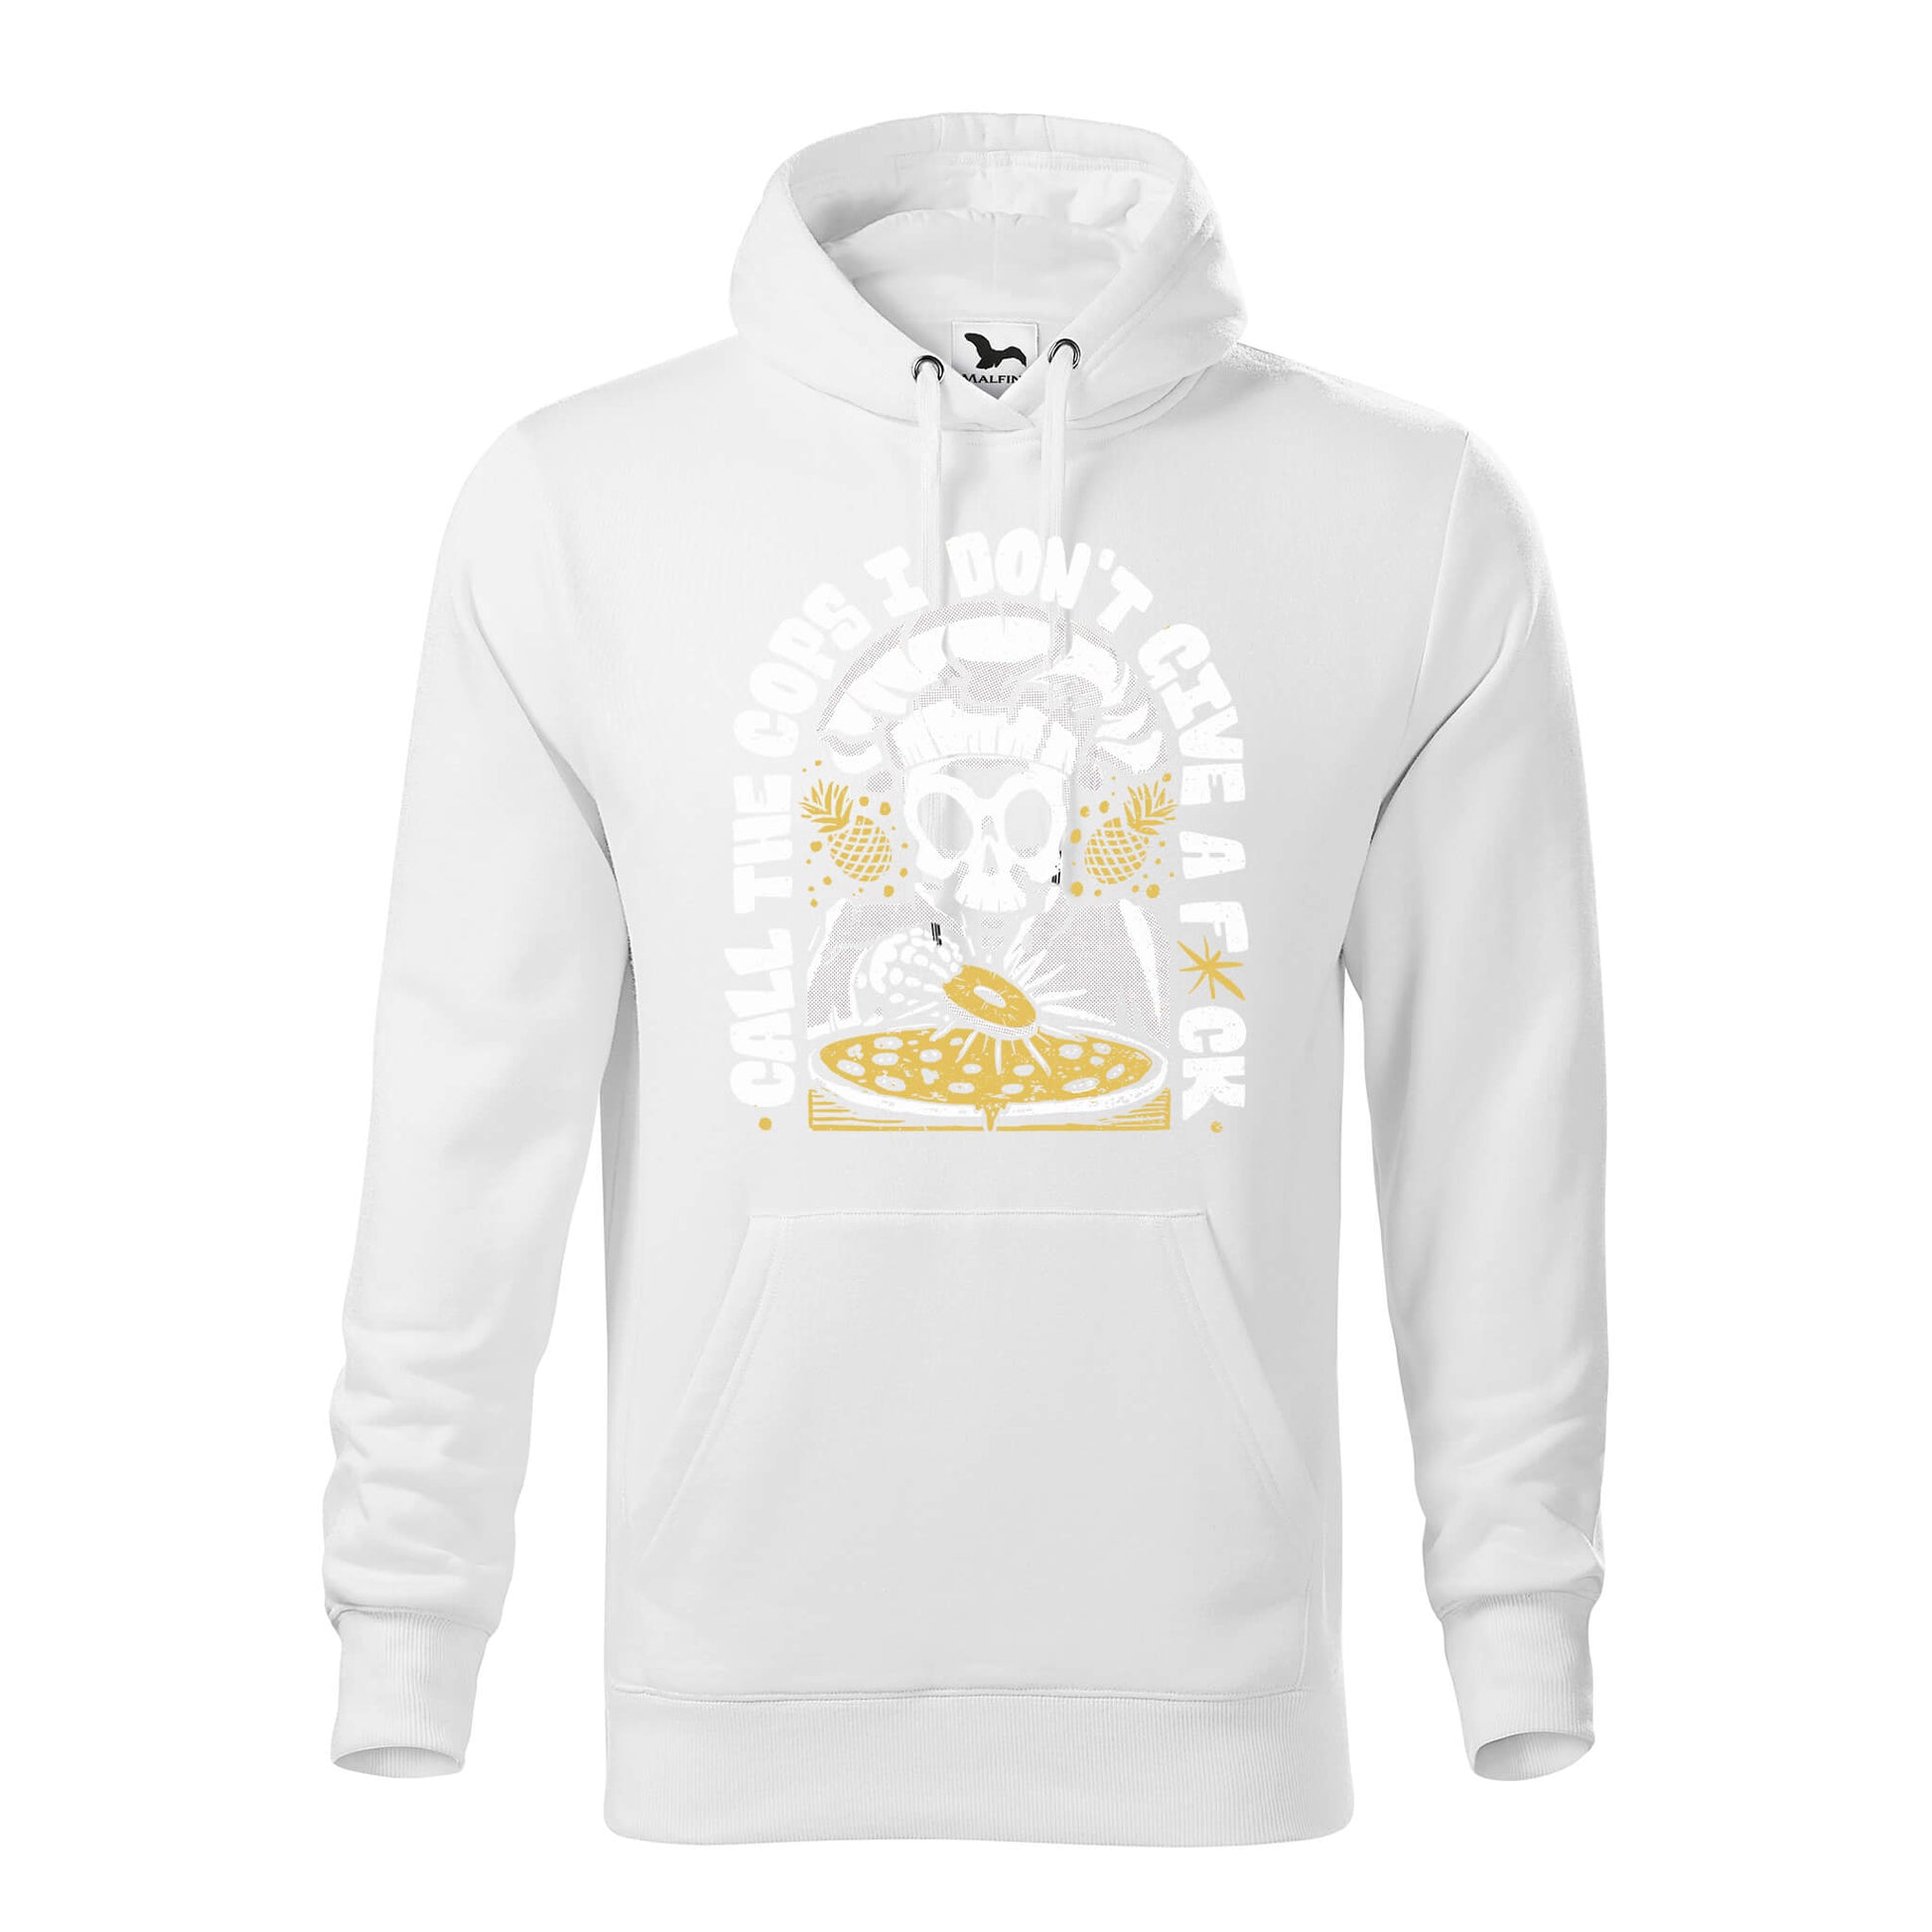 Pineapple pizza idgaf hoodie - rvdesignprint